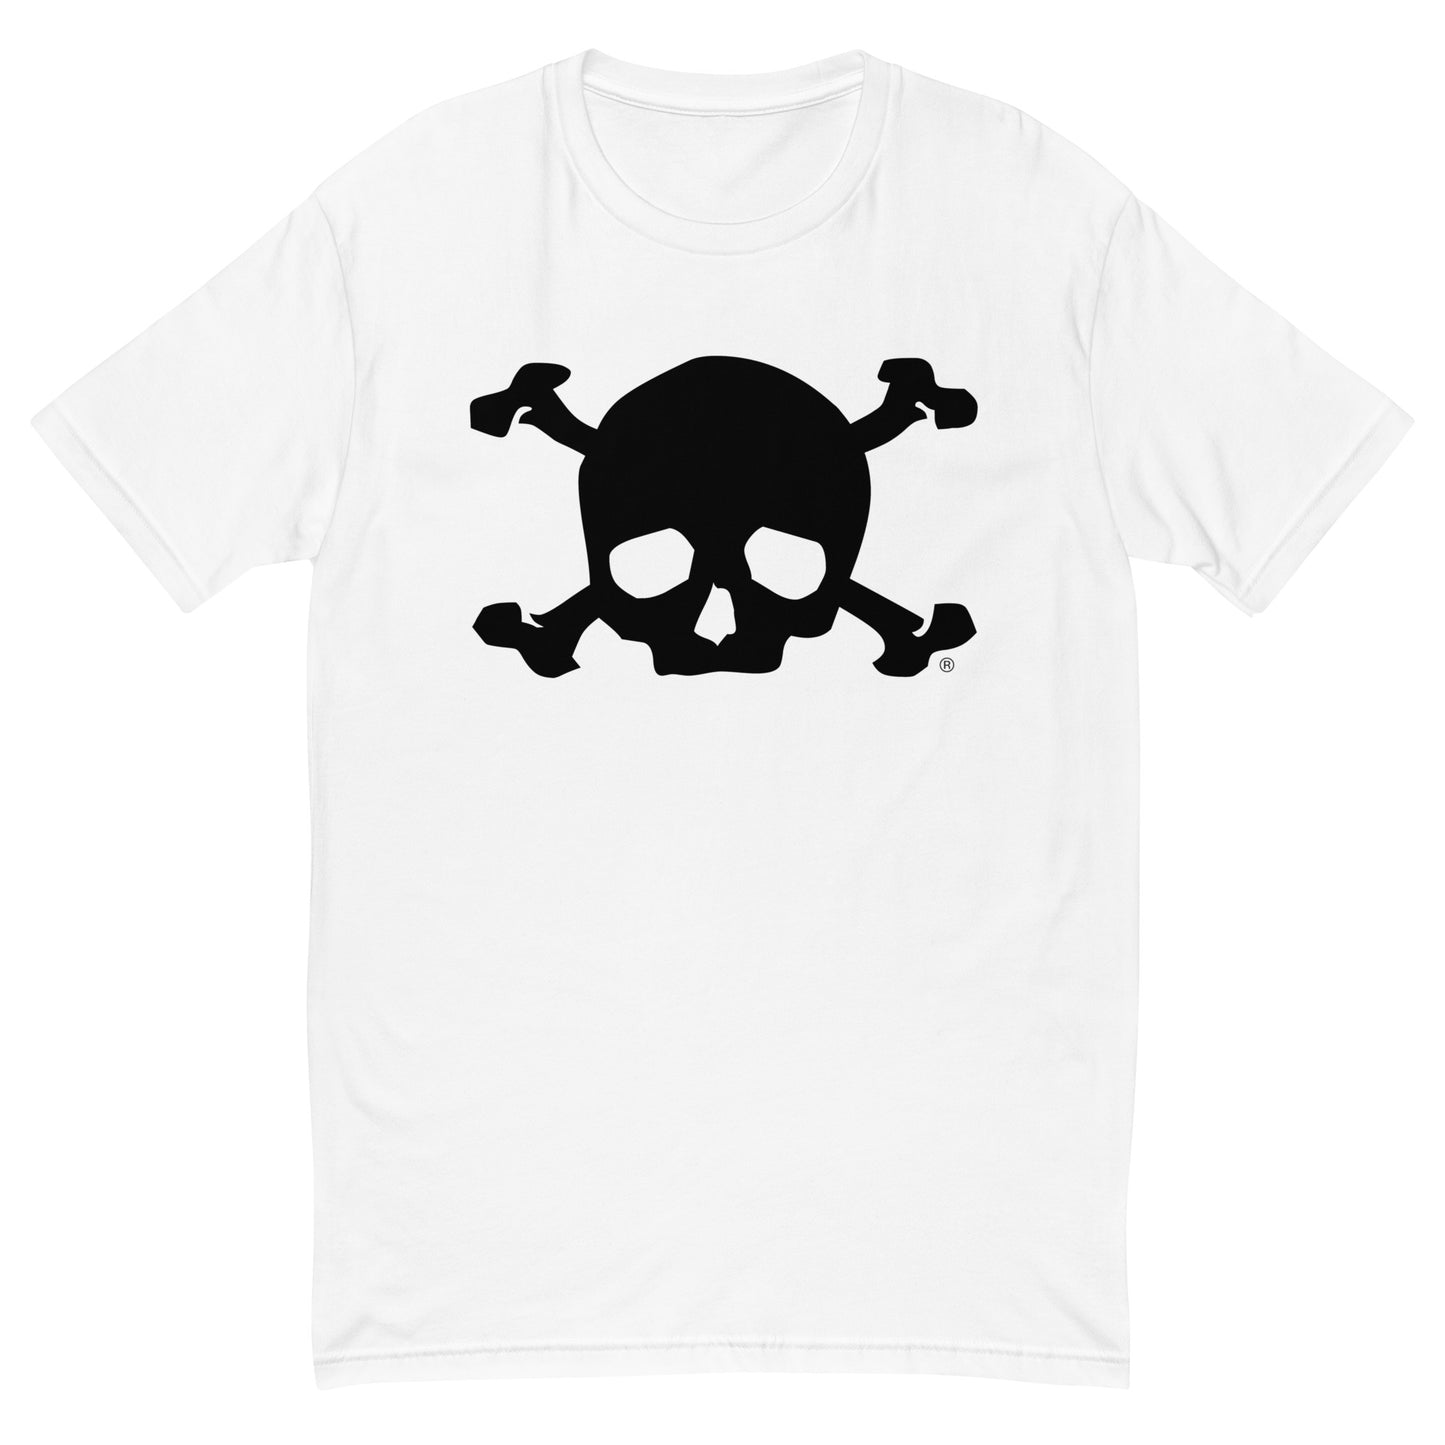 Skull & Bones T-shirt